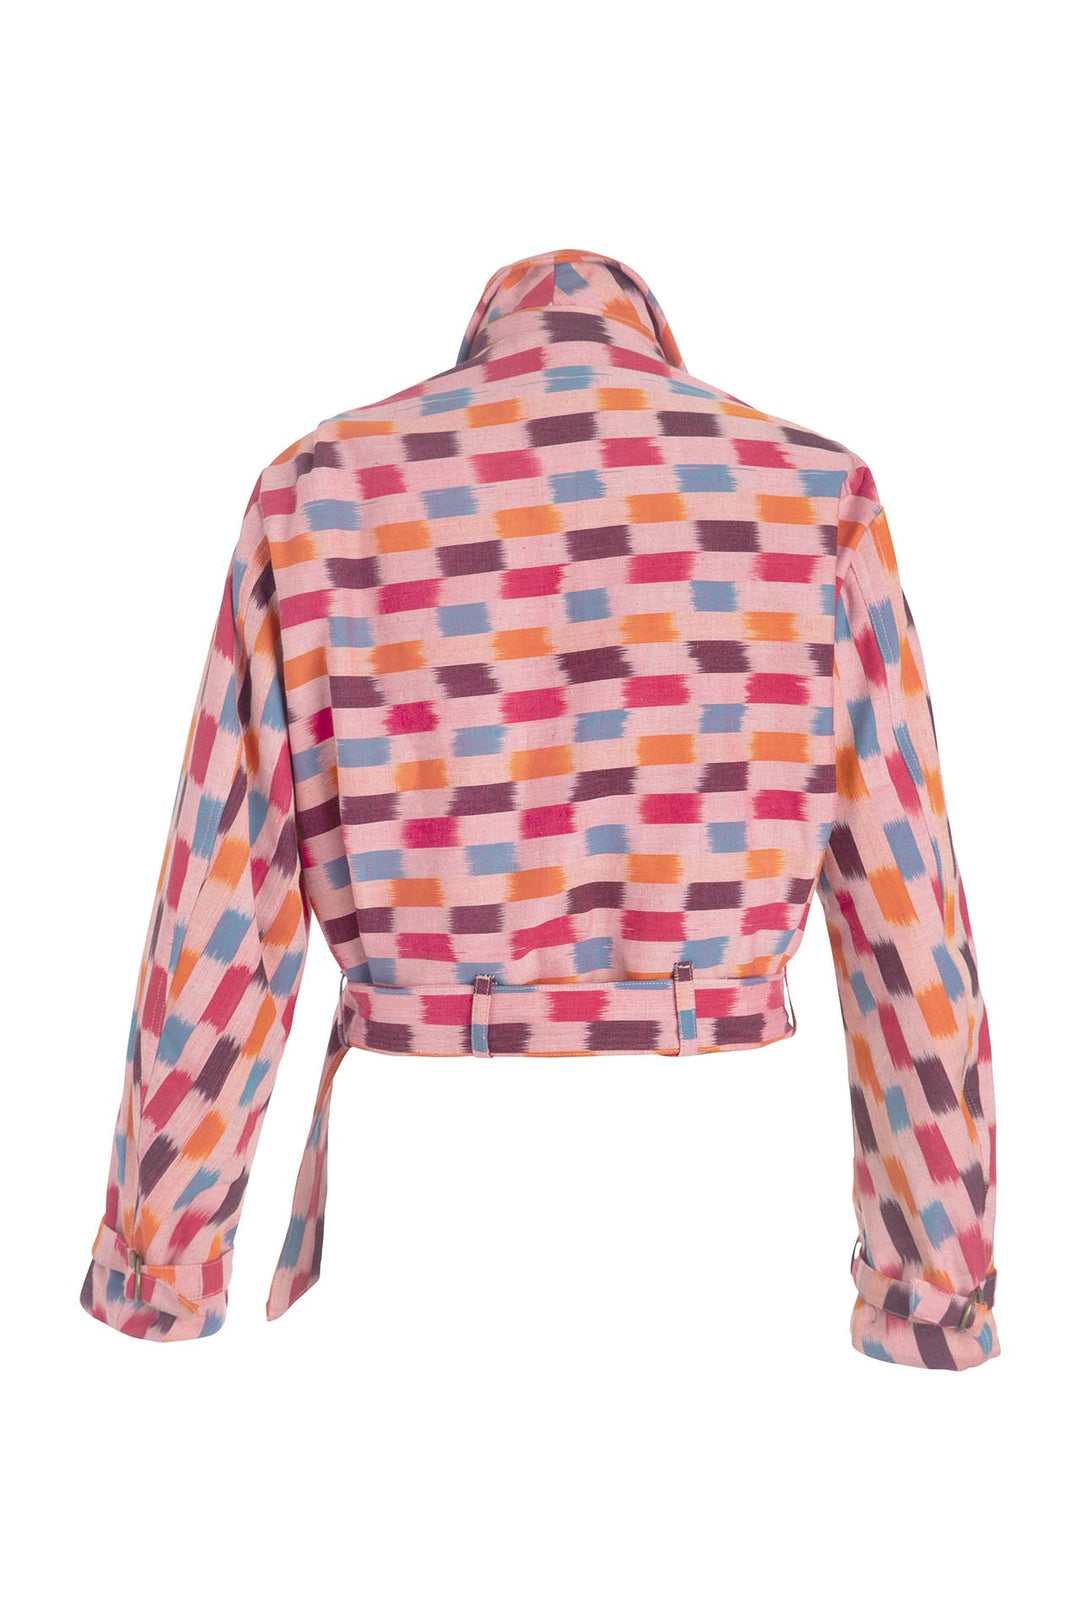 Domino Pink Ikat Jacket